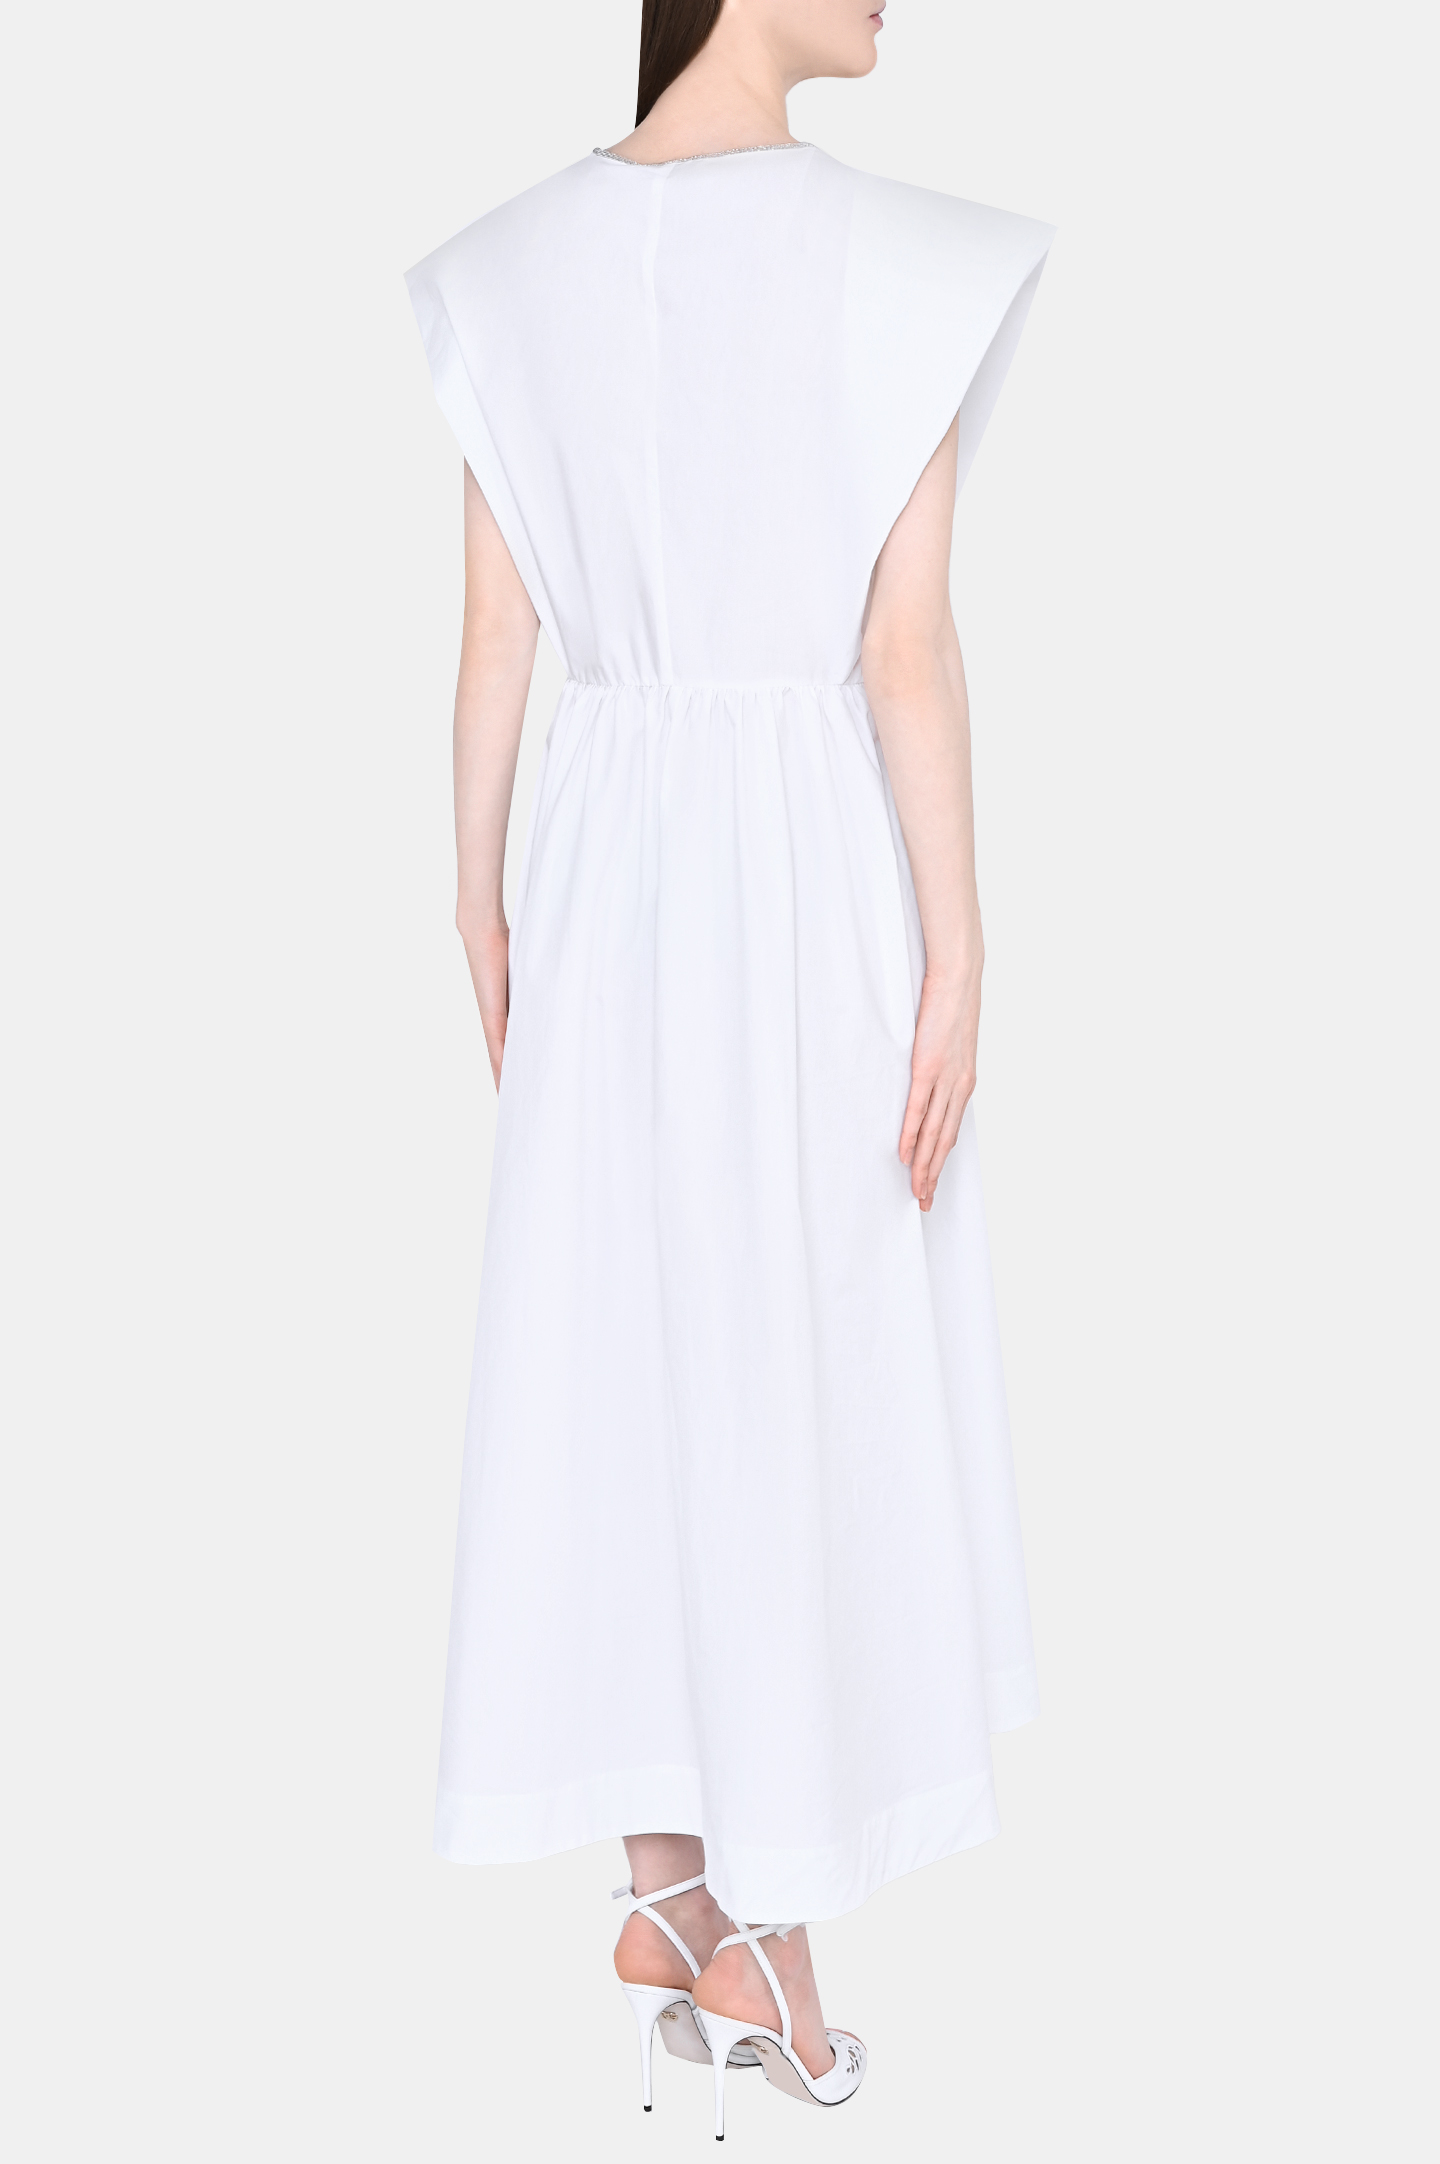 Платье FABIANA FILIPPI ABD273W193D252, цвет: Белый, Женский